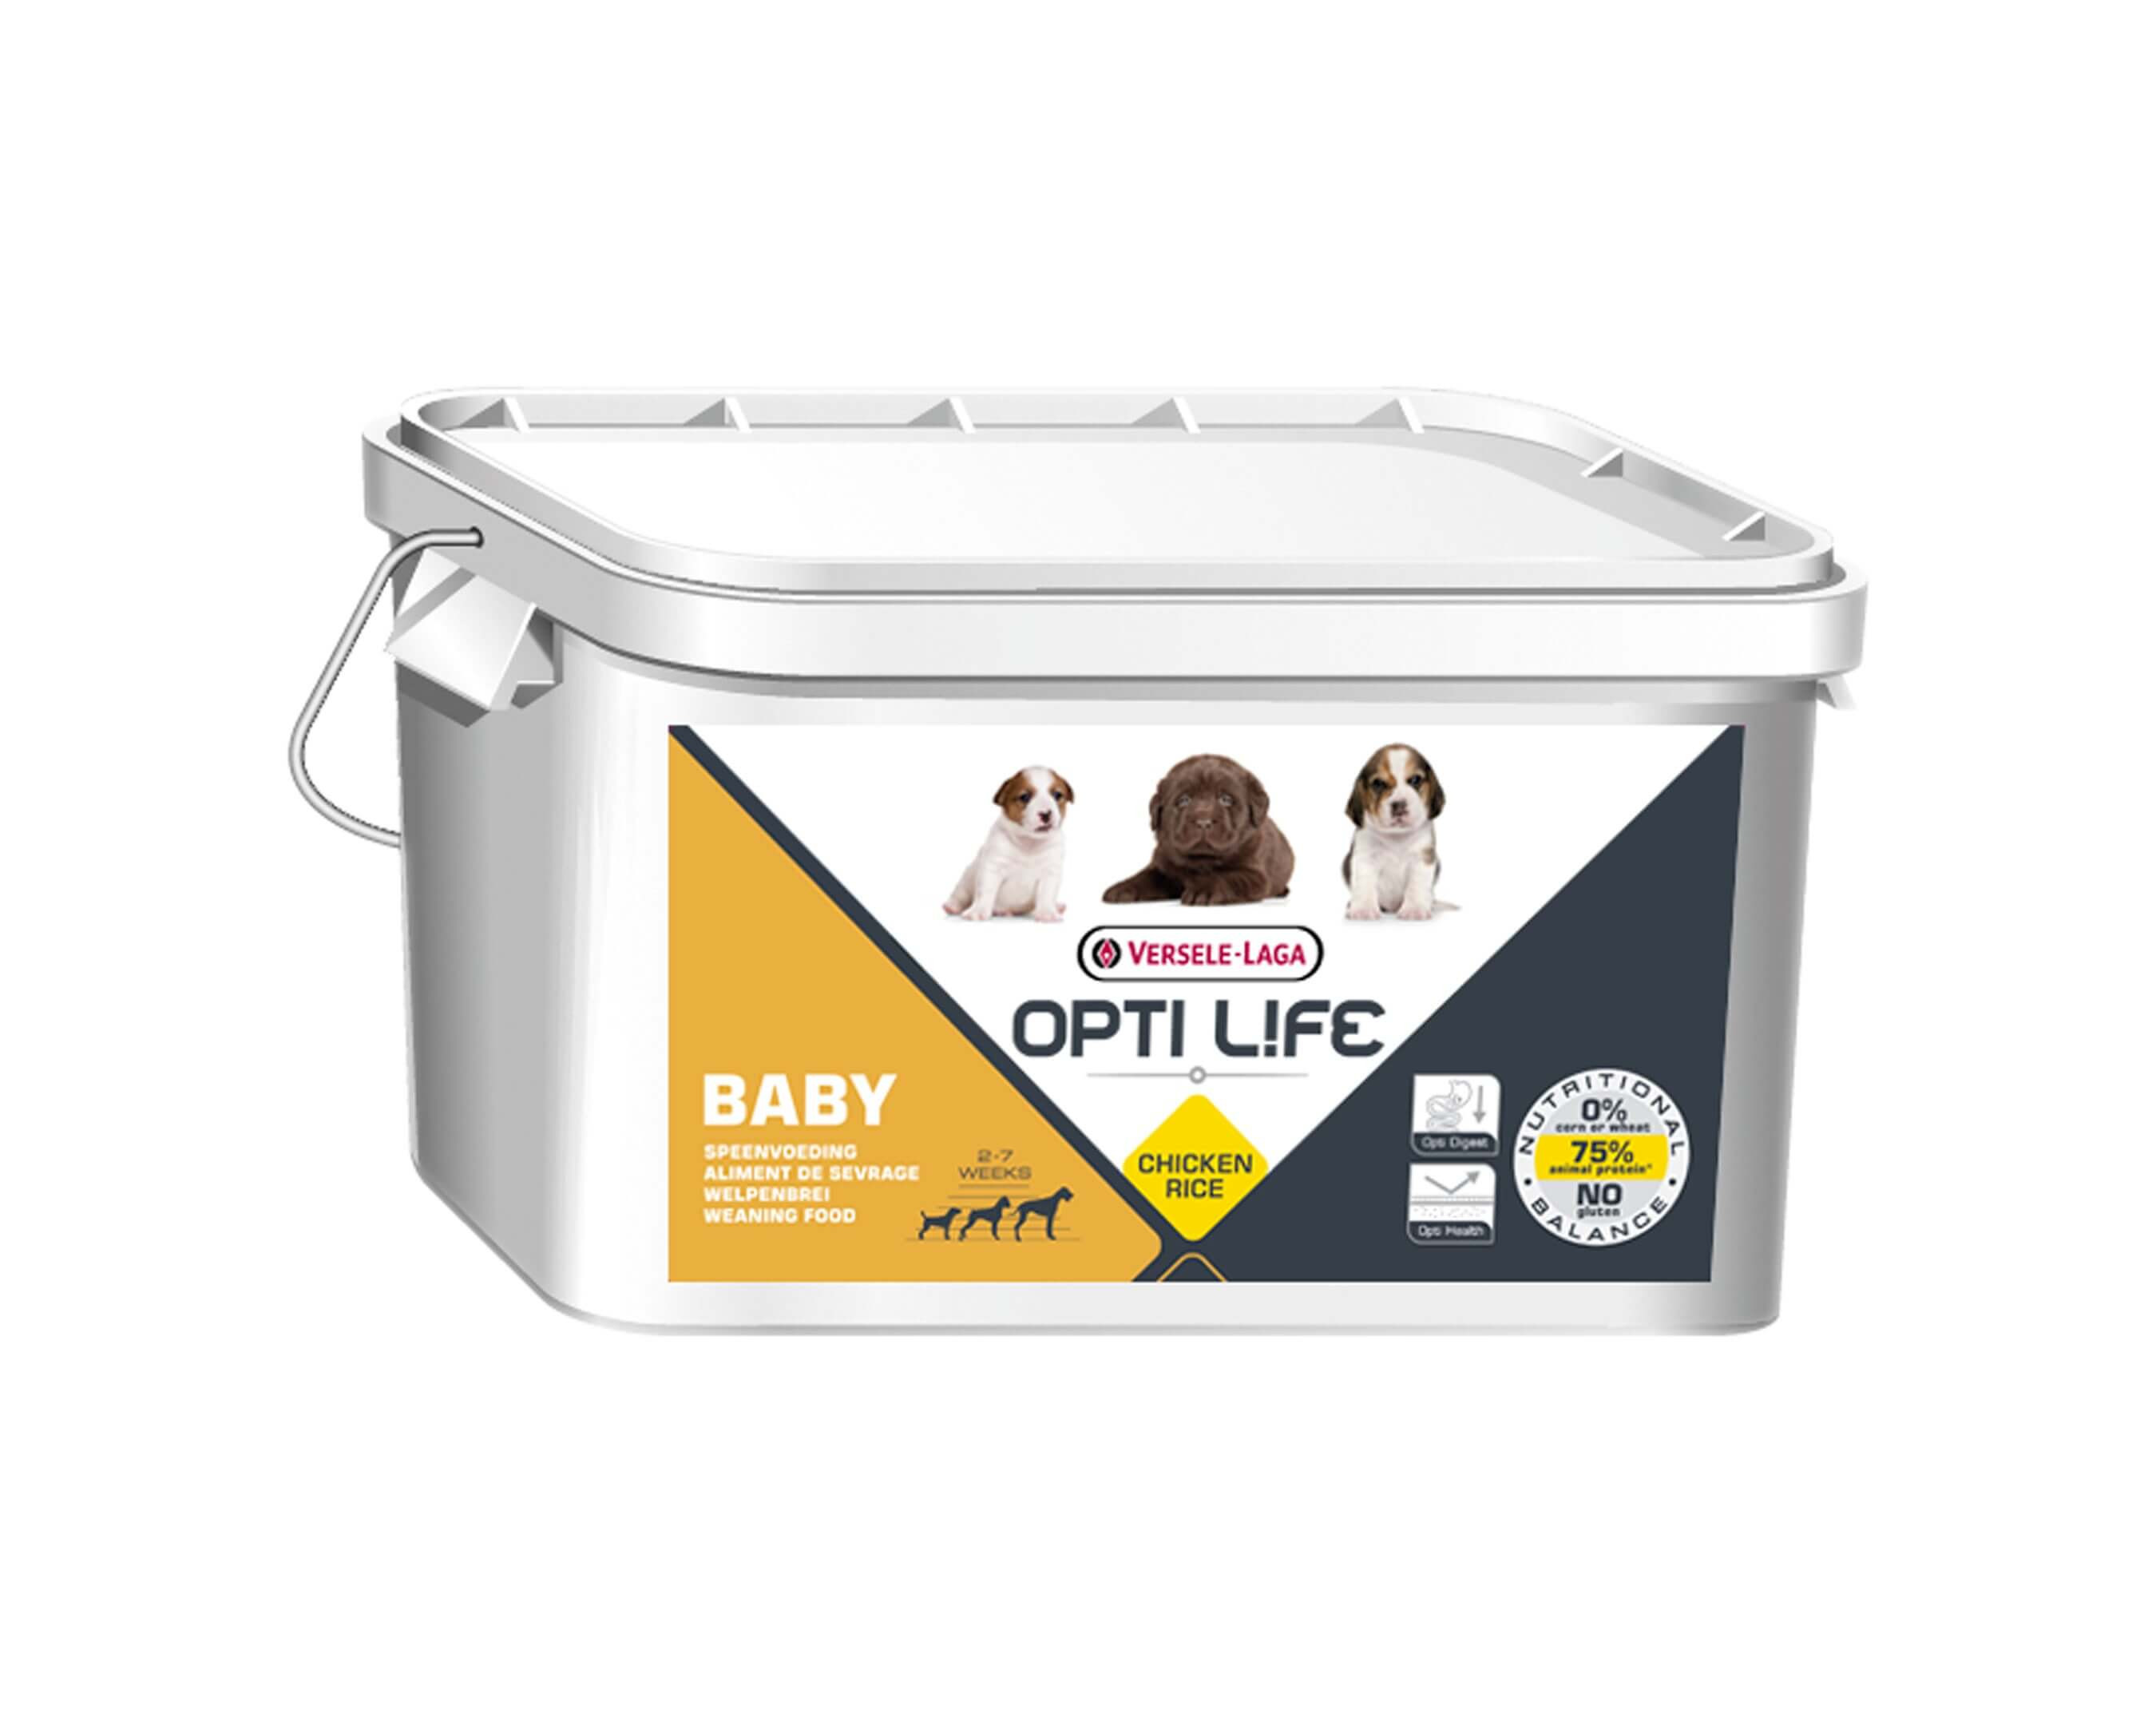 Aliment de sevrage pour chiots Opti Life Baby Versele-Laga 3 kg